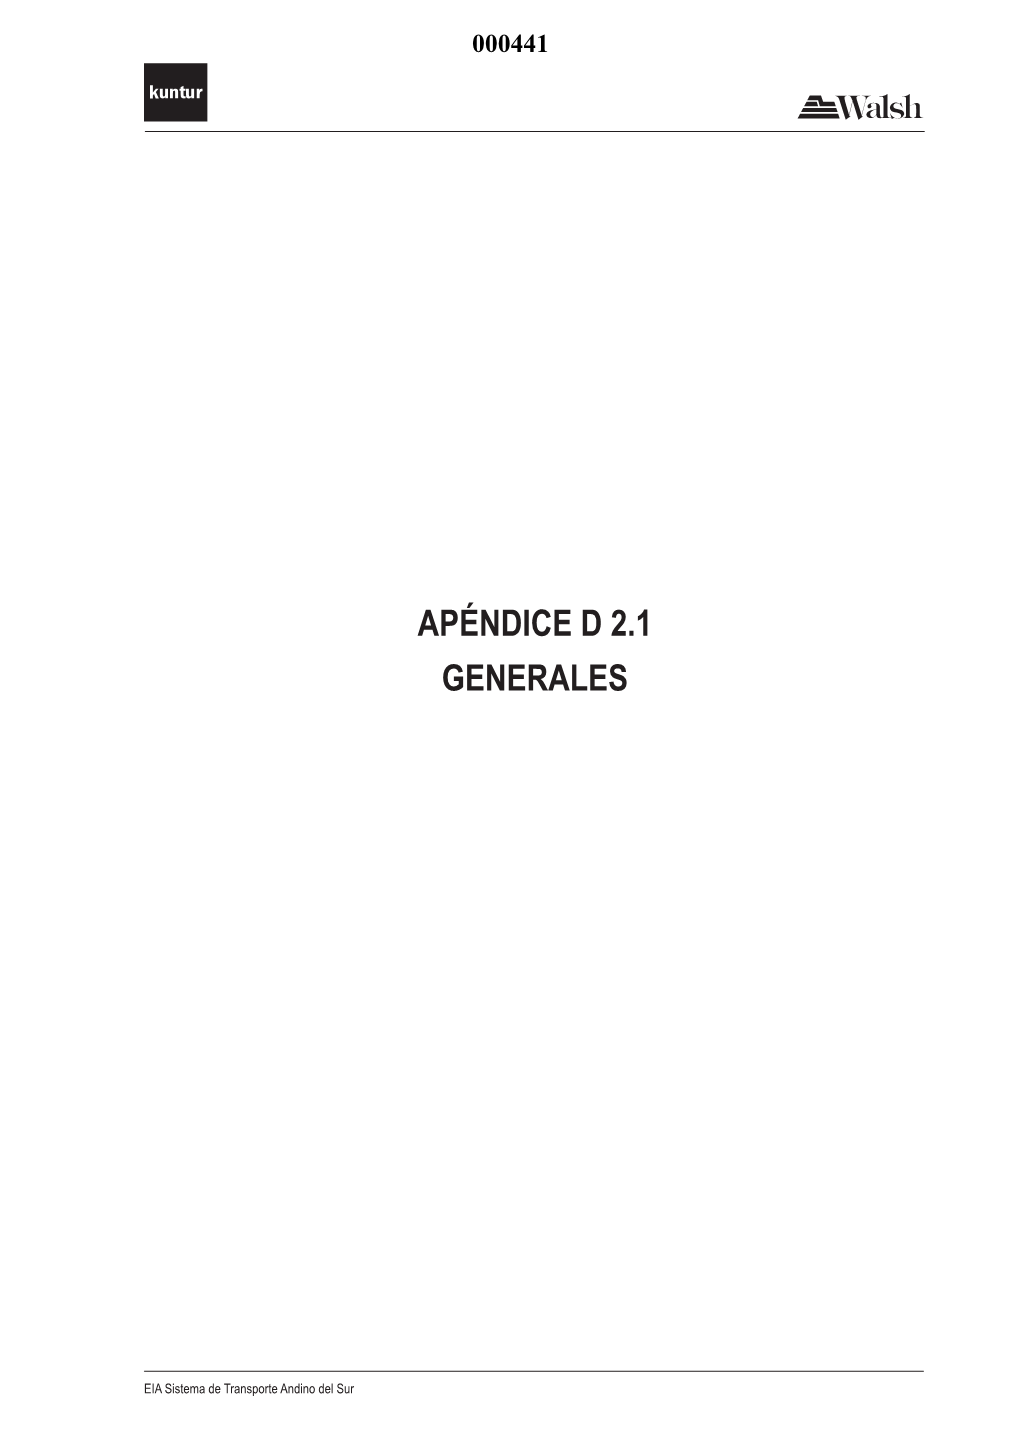 Apéndice D 2.1 Generales